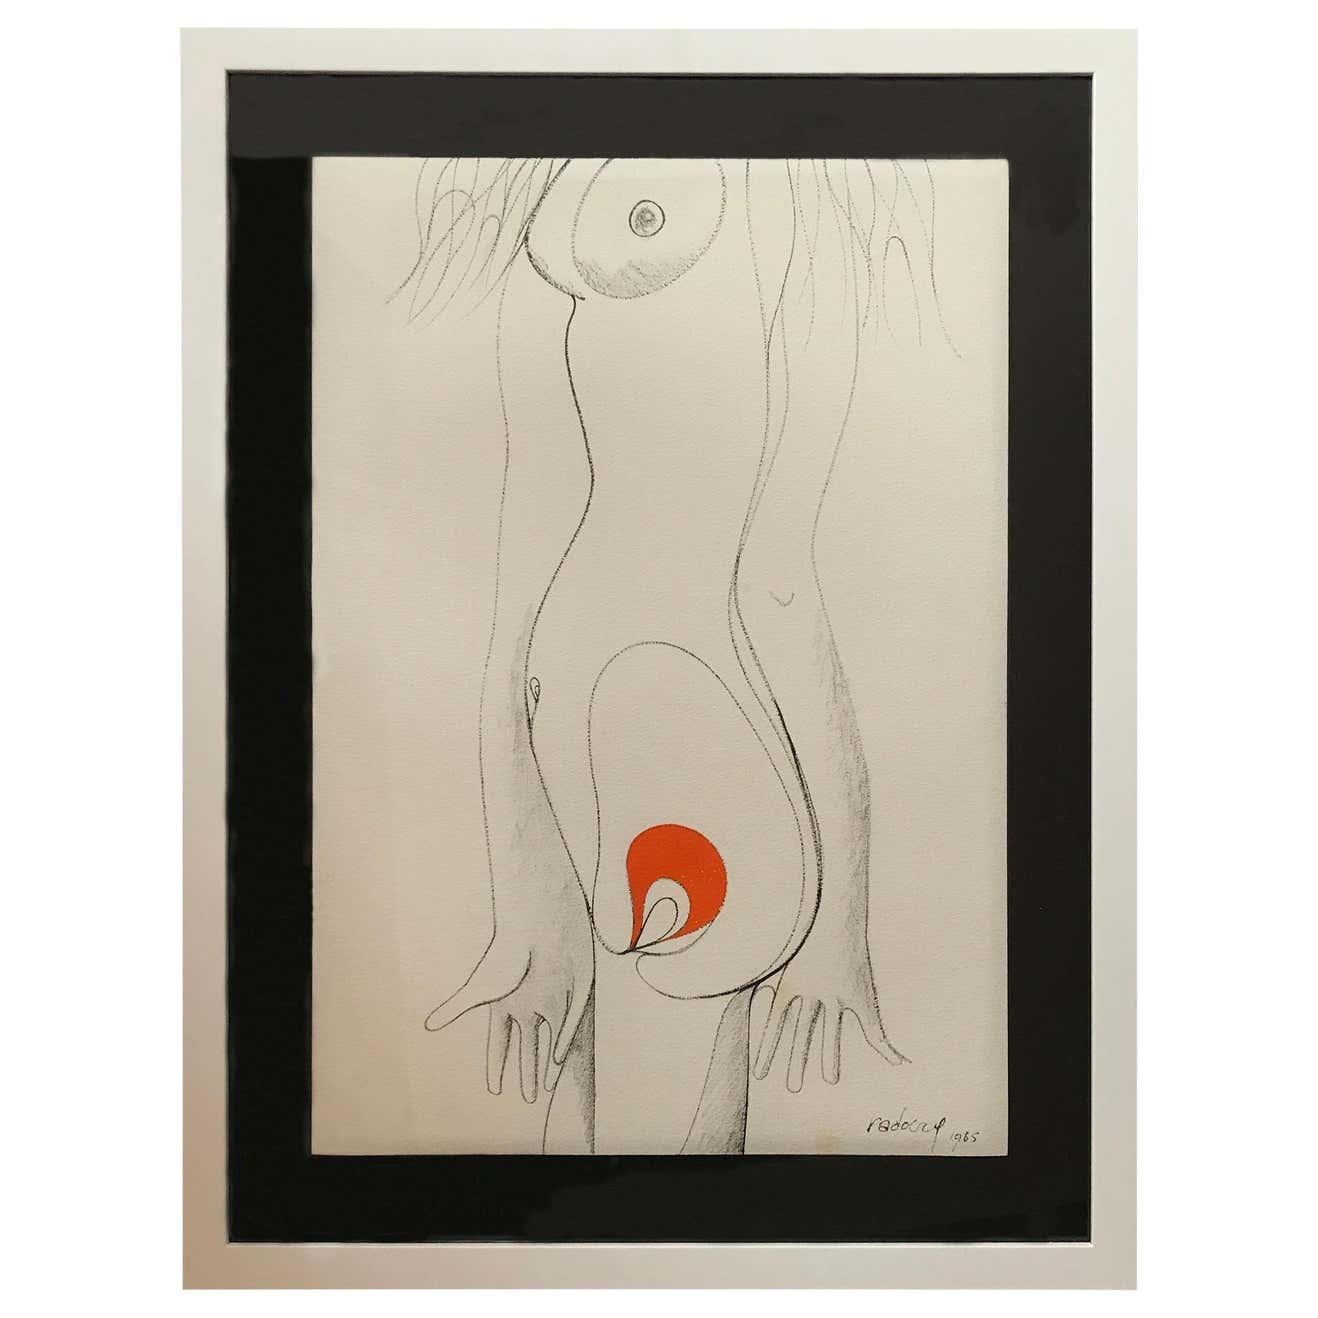 Un dessin de nu et une gouache soulignant le mystère de la grossesse. Signé Radoczy, 1965.

Albert Radoczy était un peintre de la région de Tristate à New York, notamment dans les années 1960 et 1970. Radoczy était un maître dans l'exploration de la